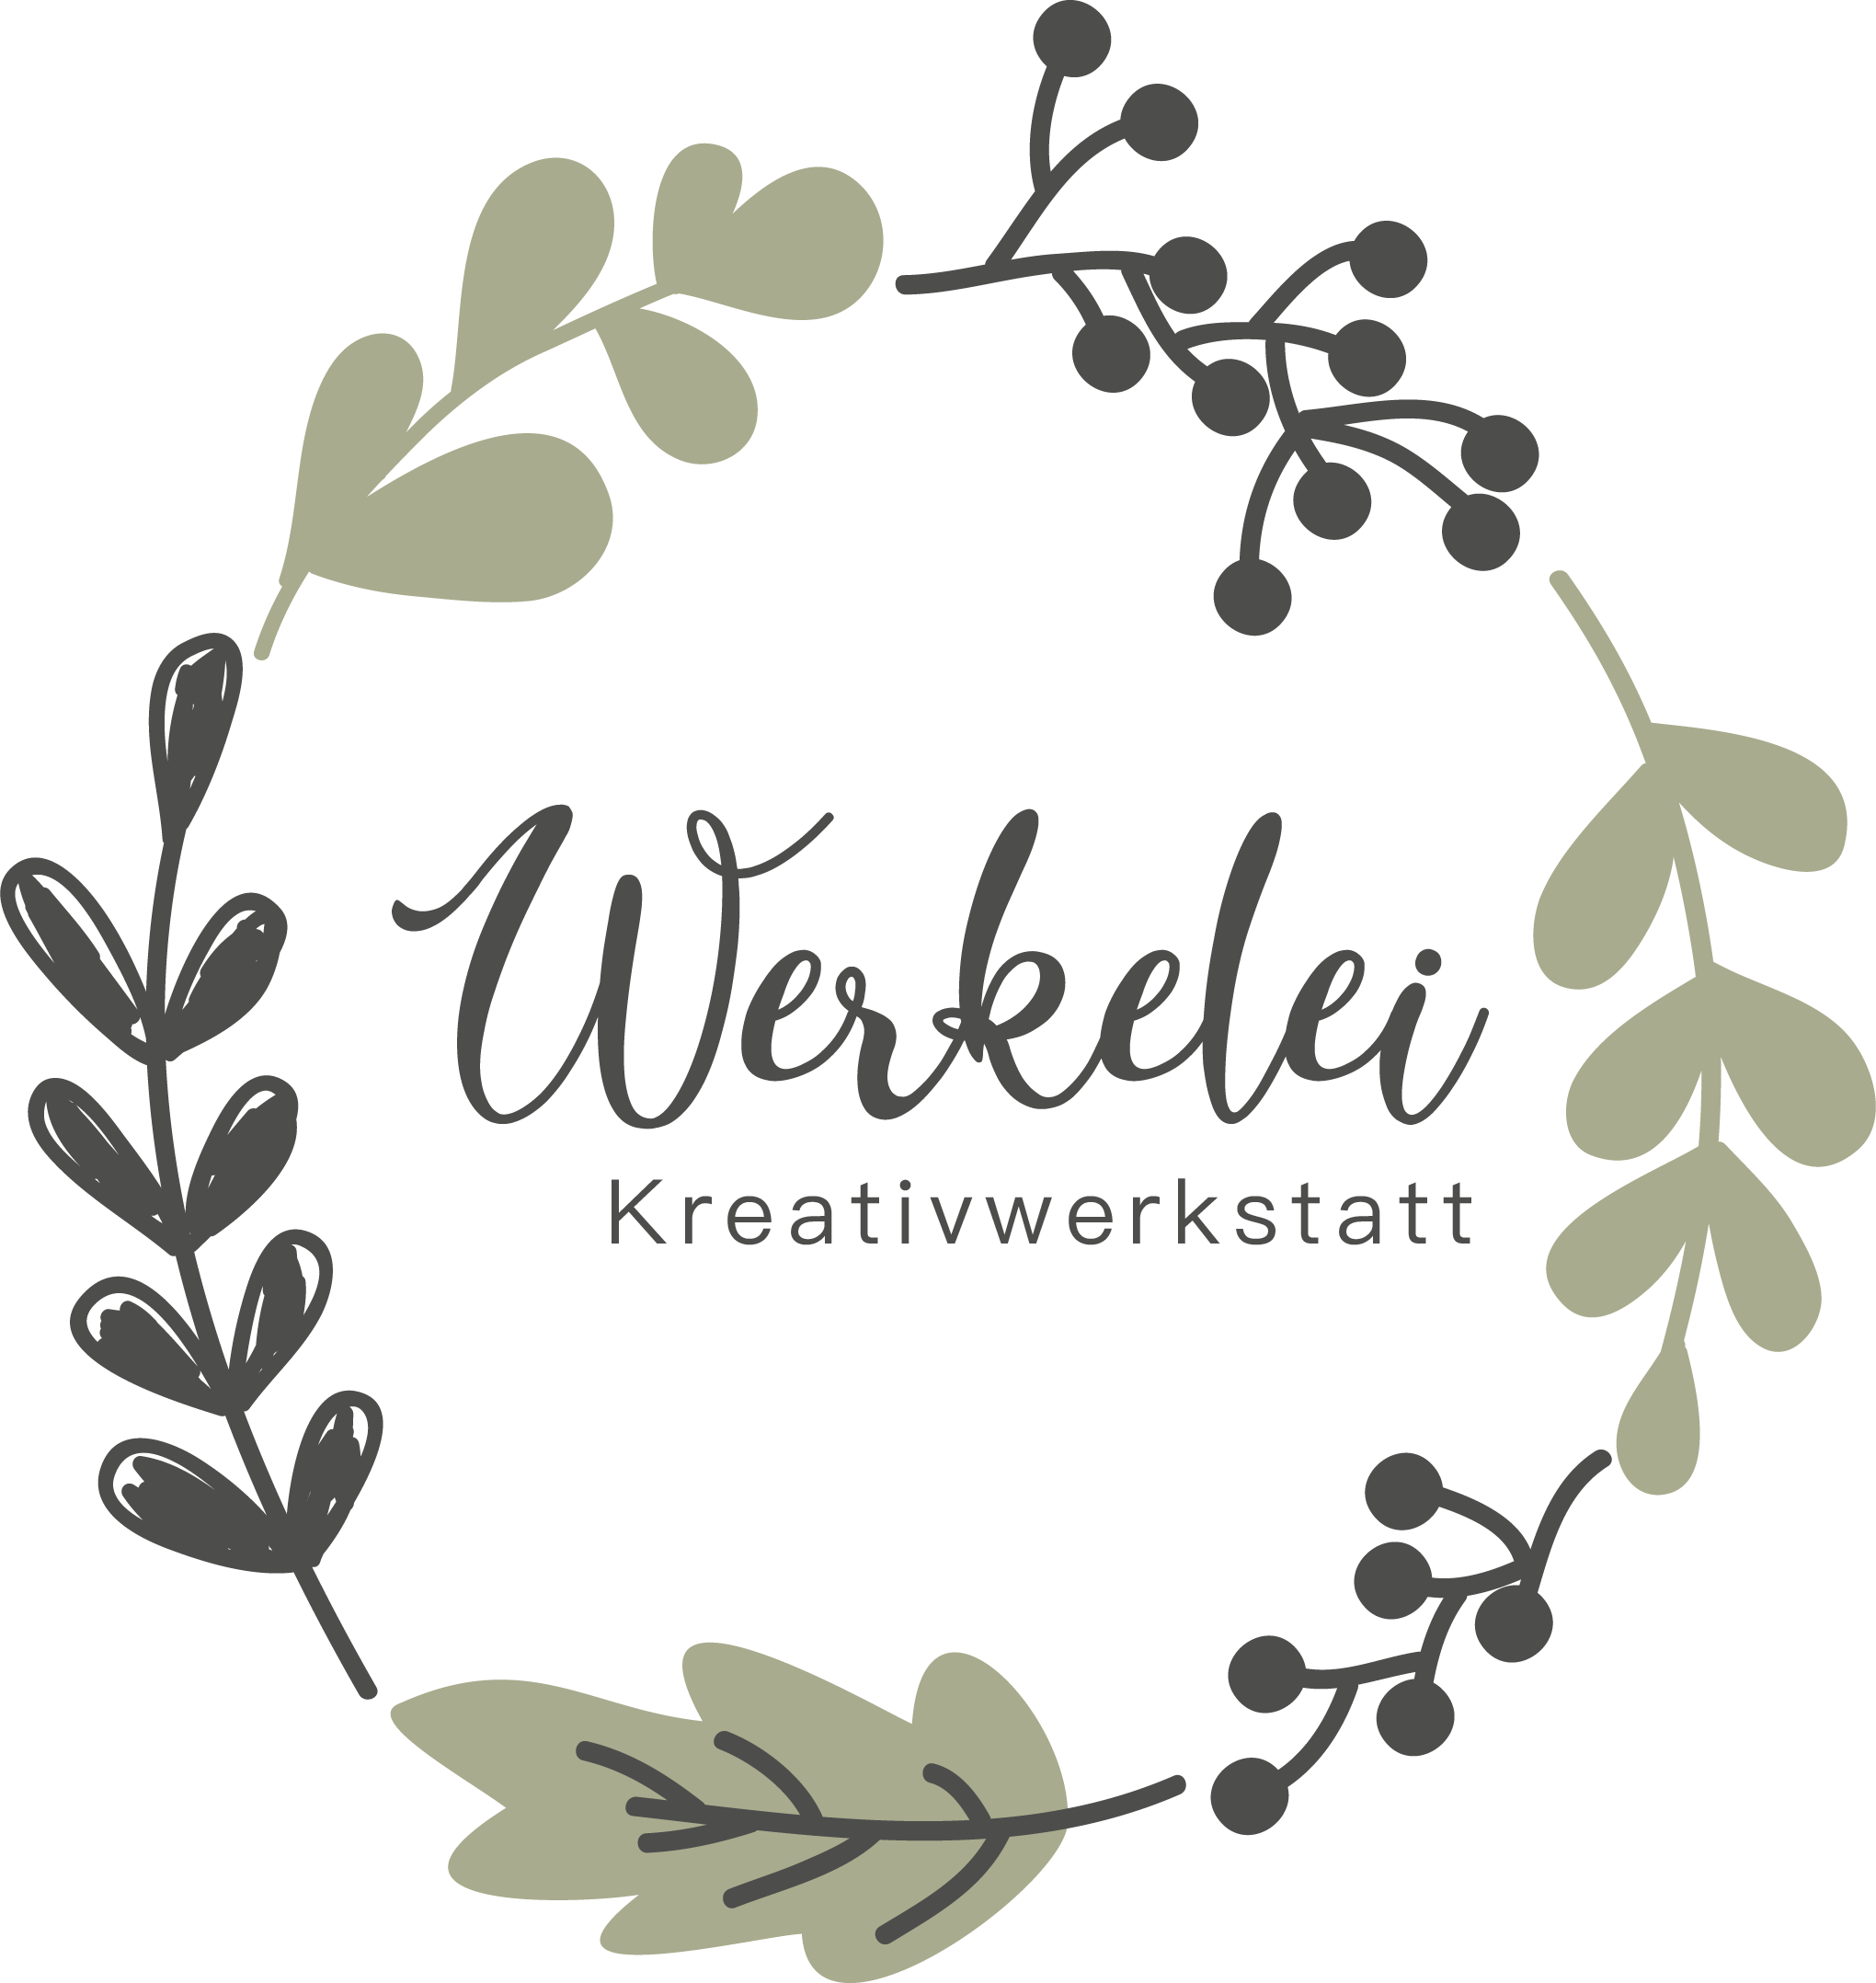 Workshop Werkeln